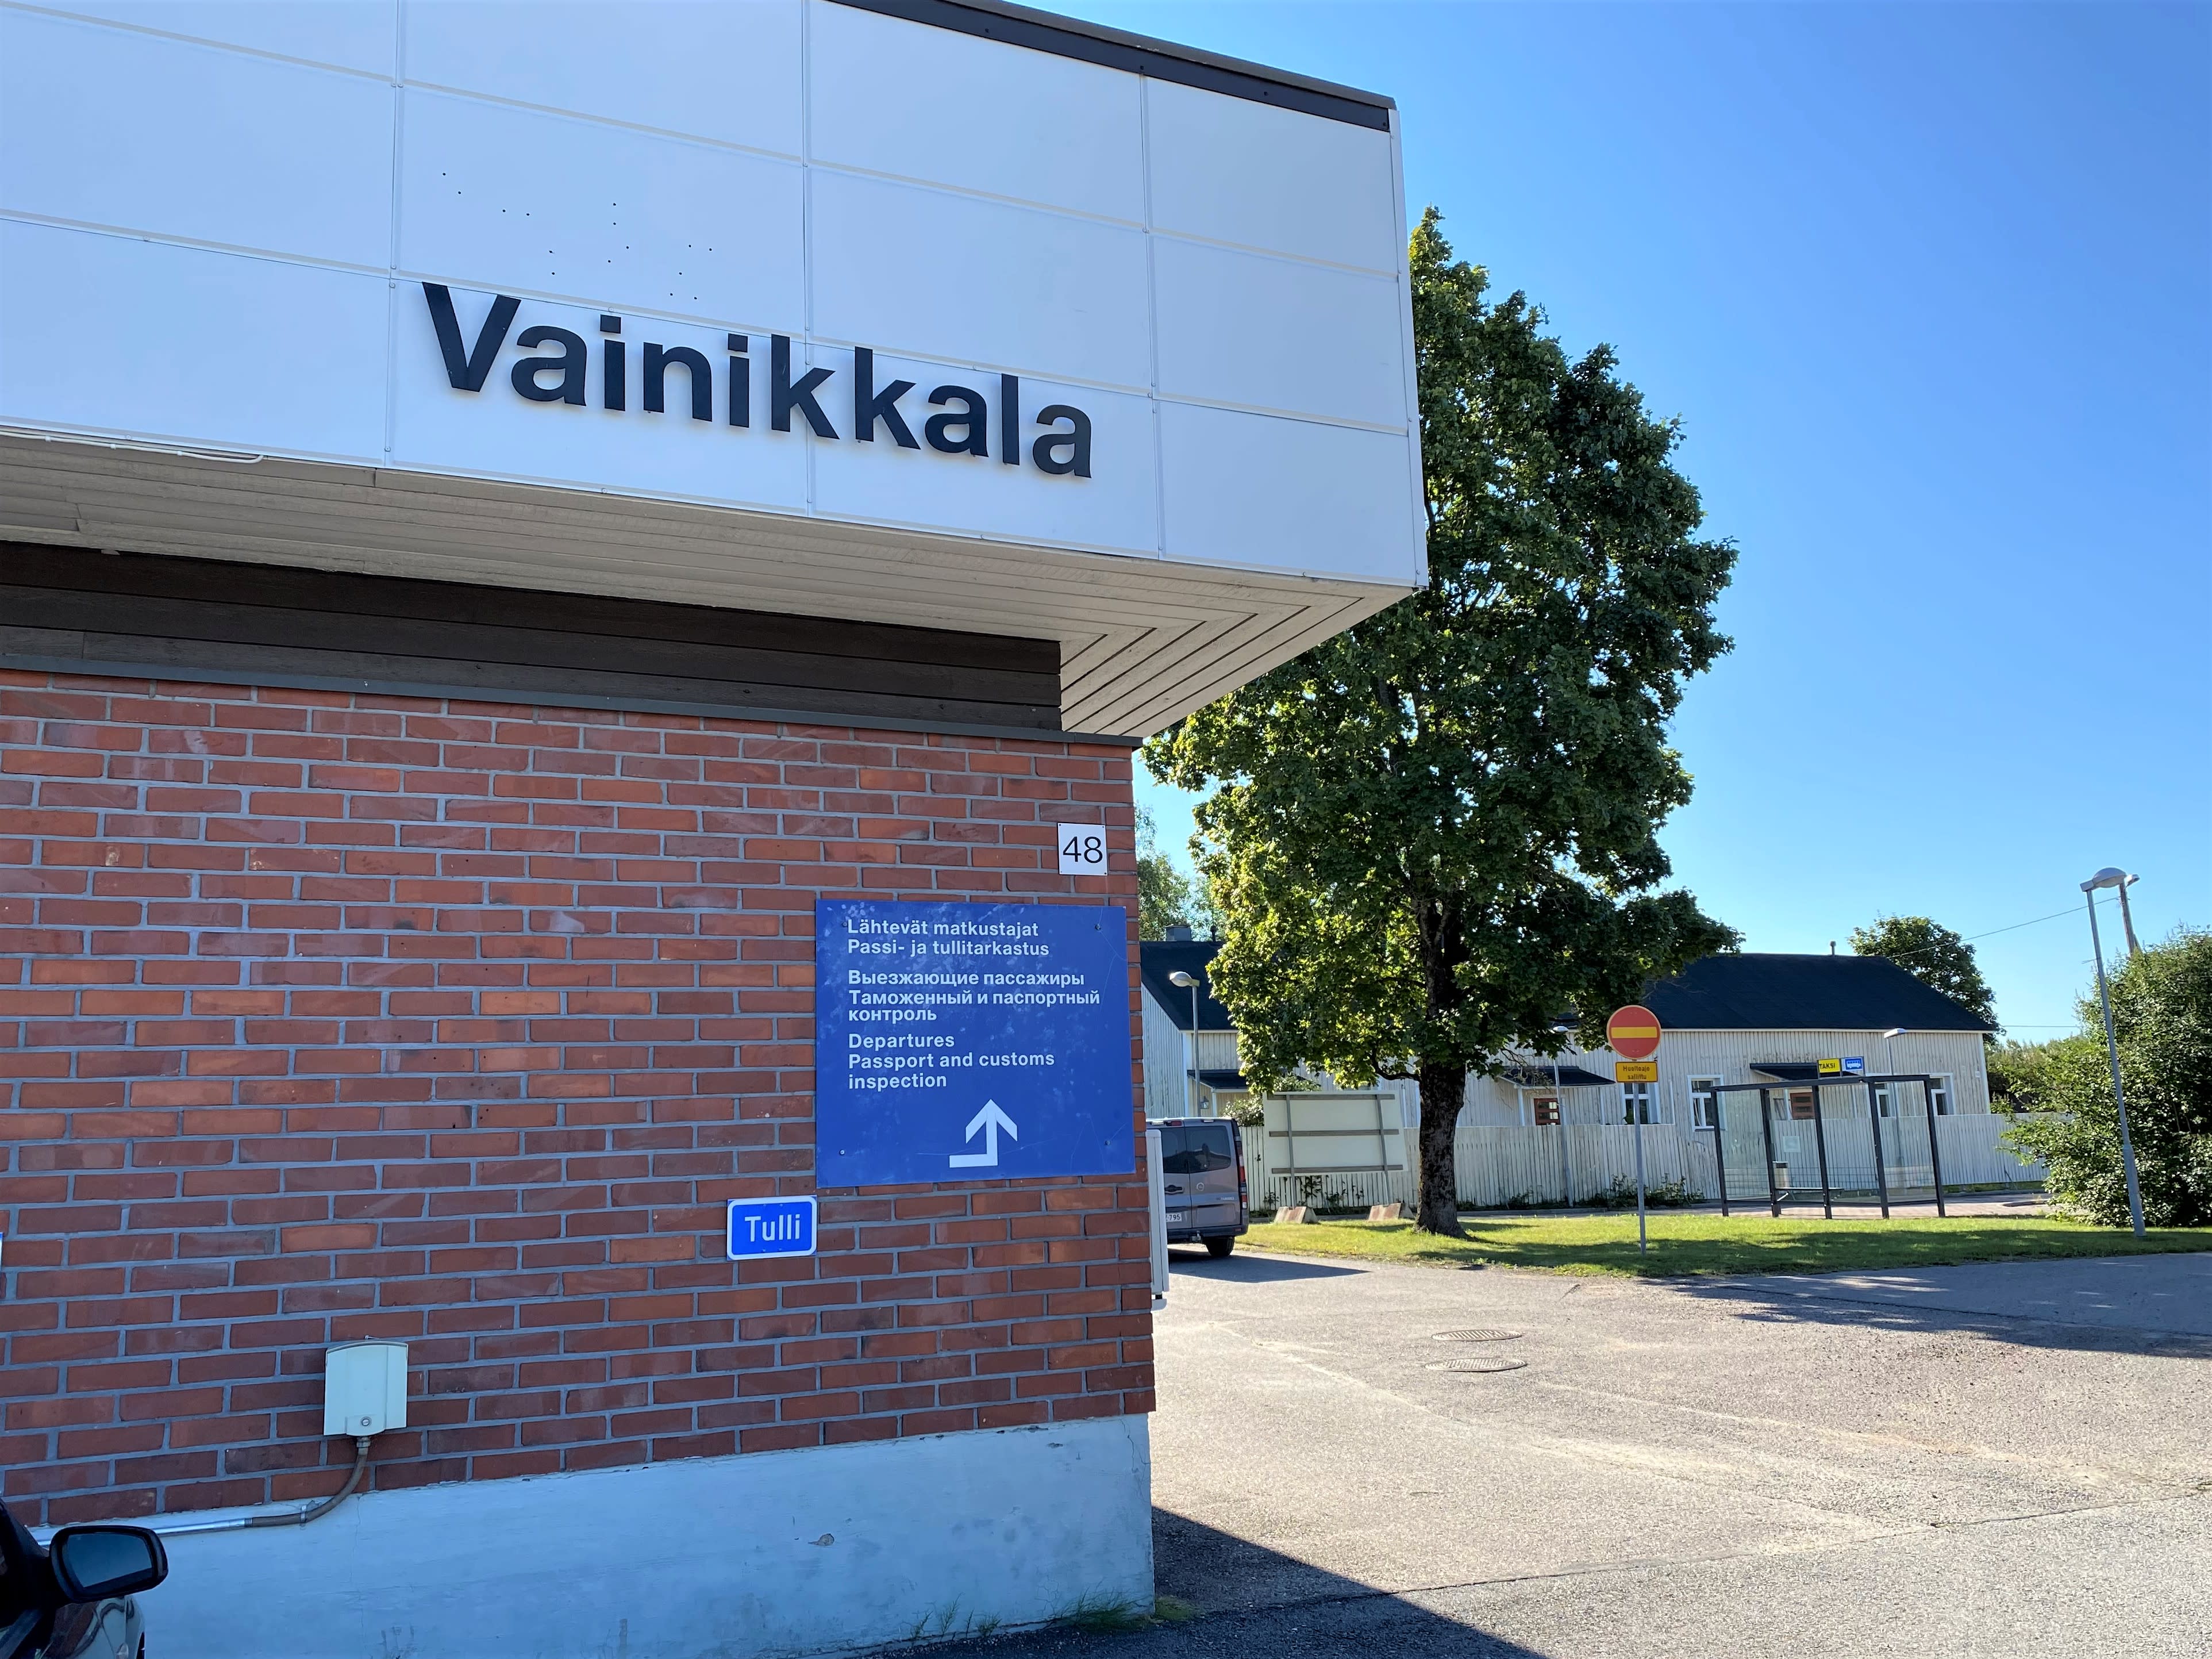 The border of the Vainikkala railway will open on Monday